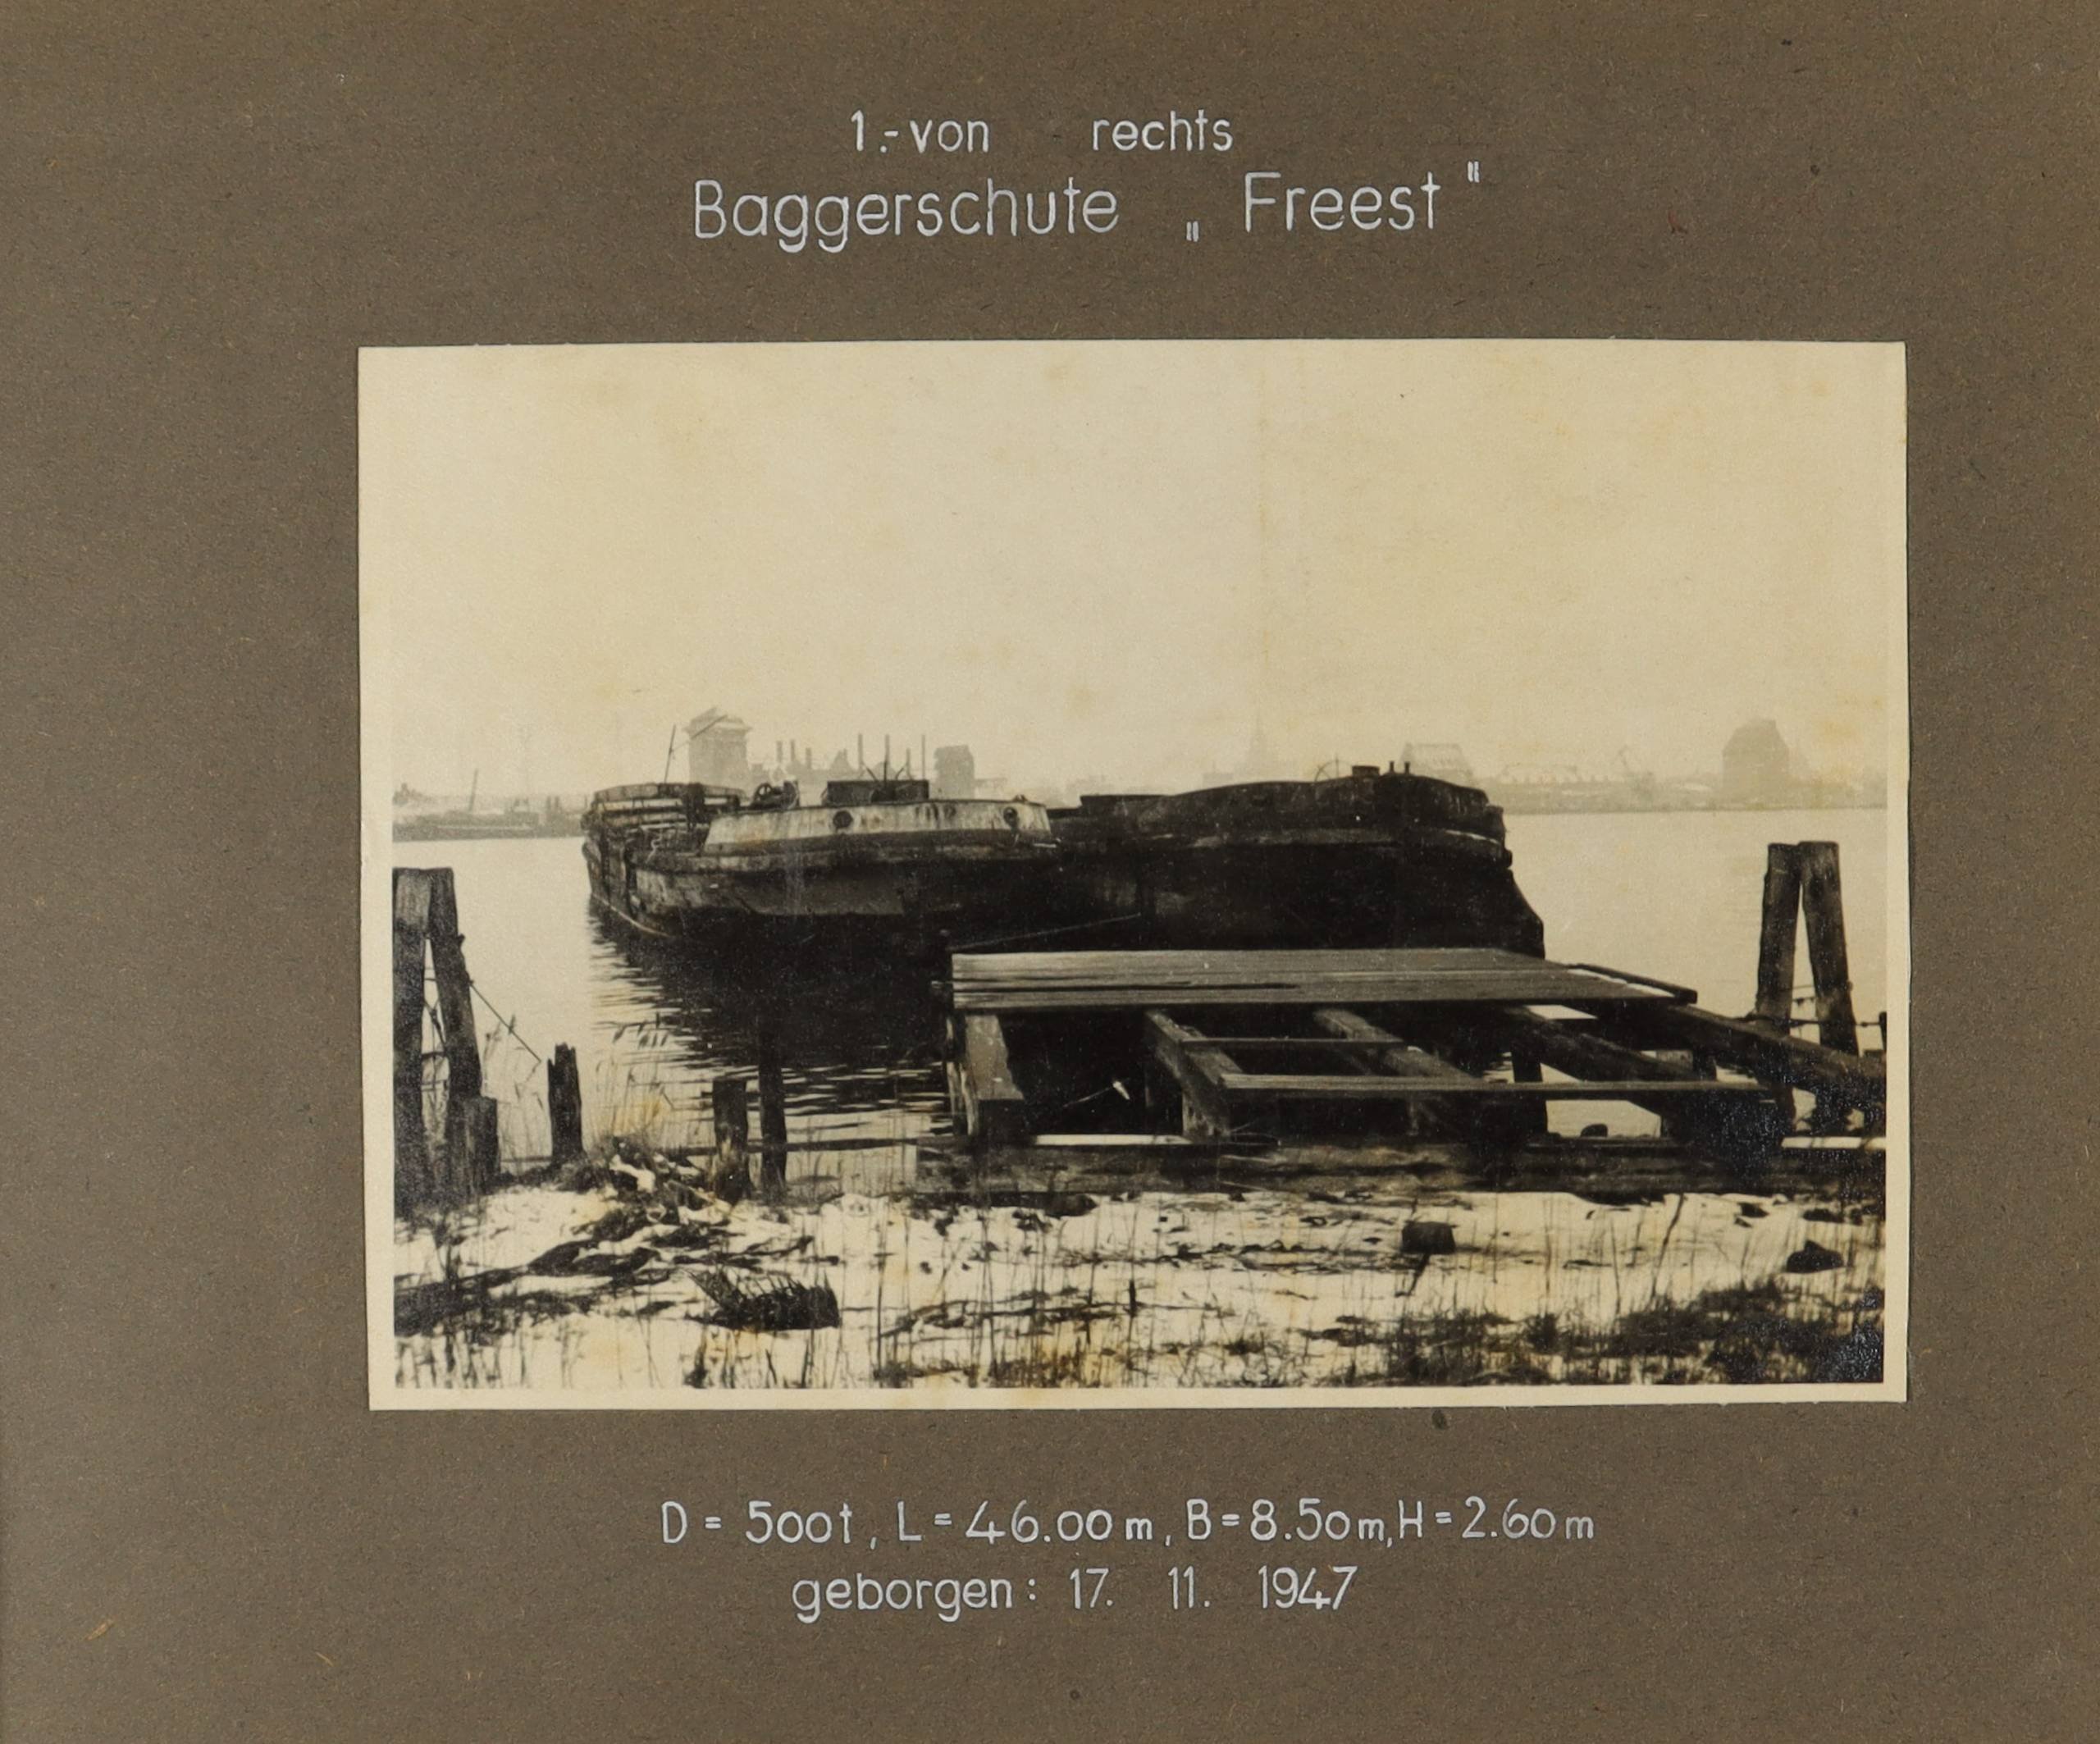 Zwei Schiffwracks, rechts die Baggerschute "Freest" (Schiffbau- und Schiffahrtsmuseum Rostock RR-F)